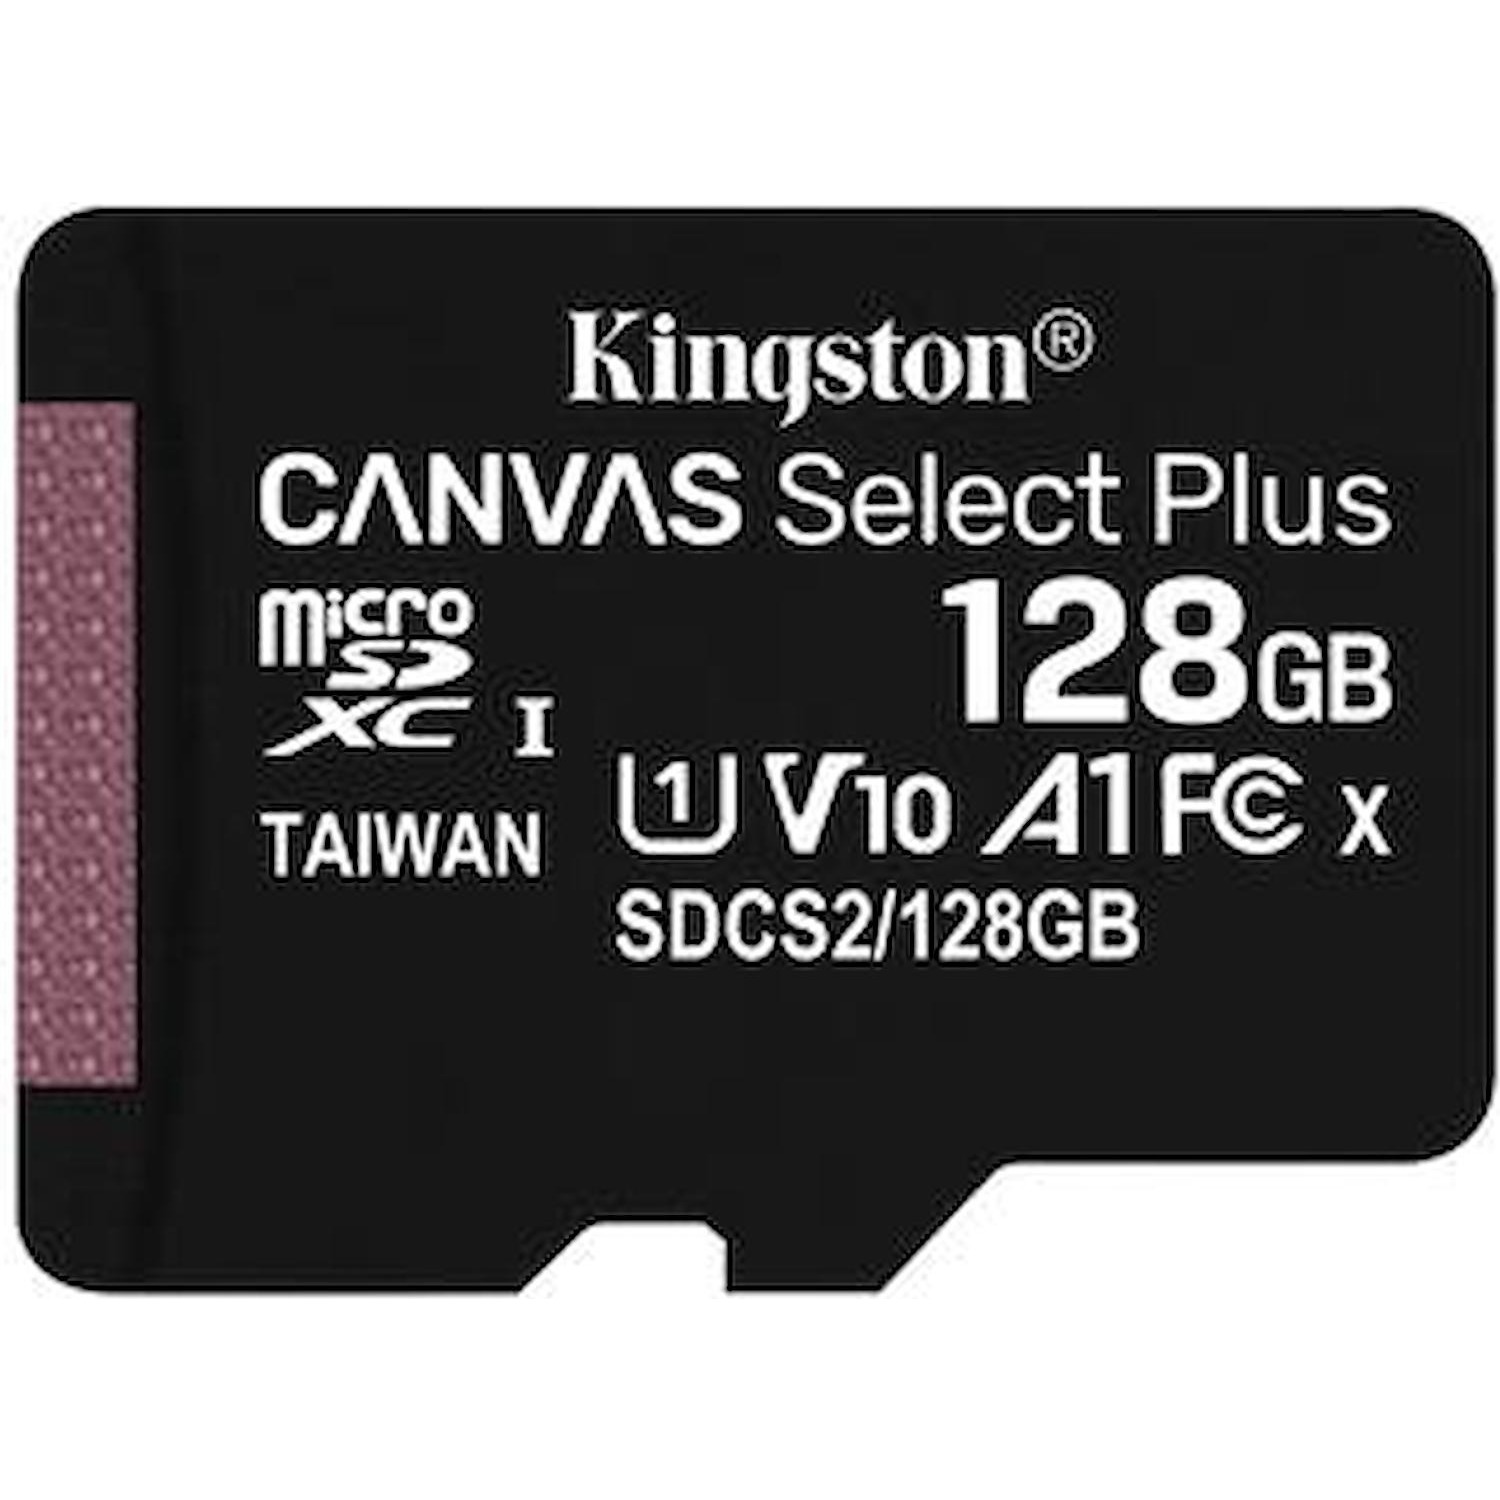 Immagine per MicroSD Kingston 128GB con adattatore da DIMOStore